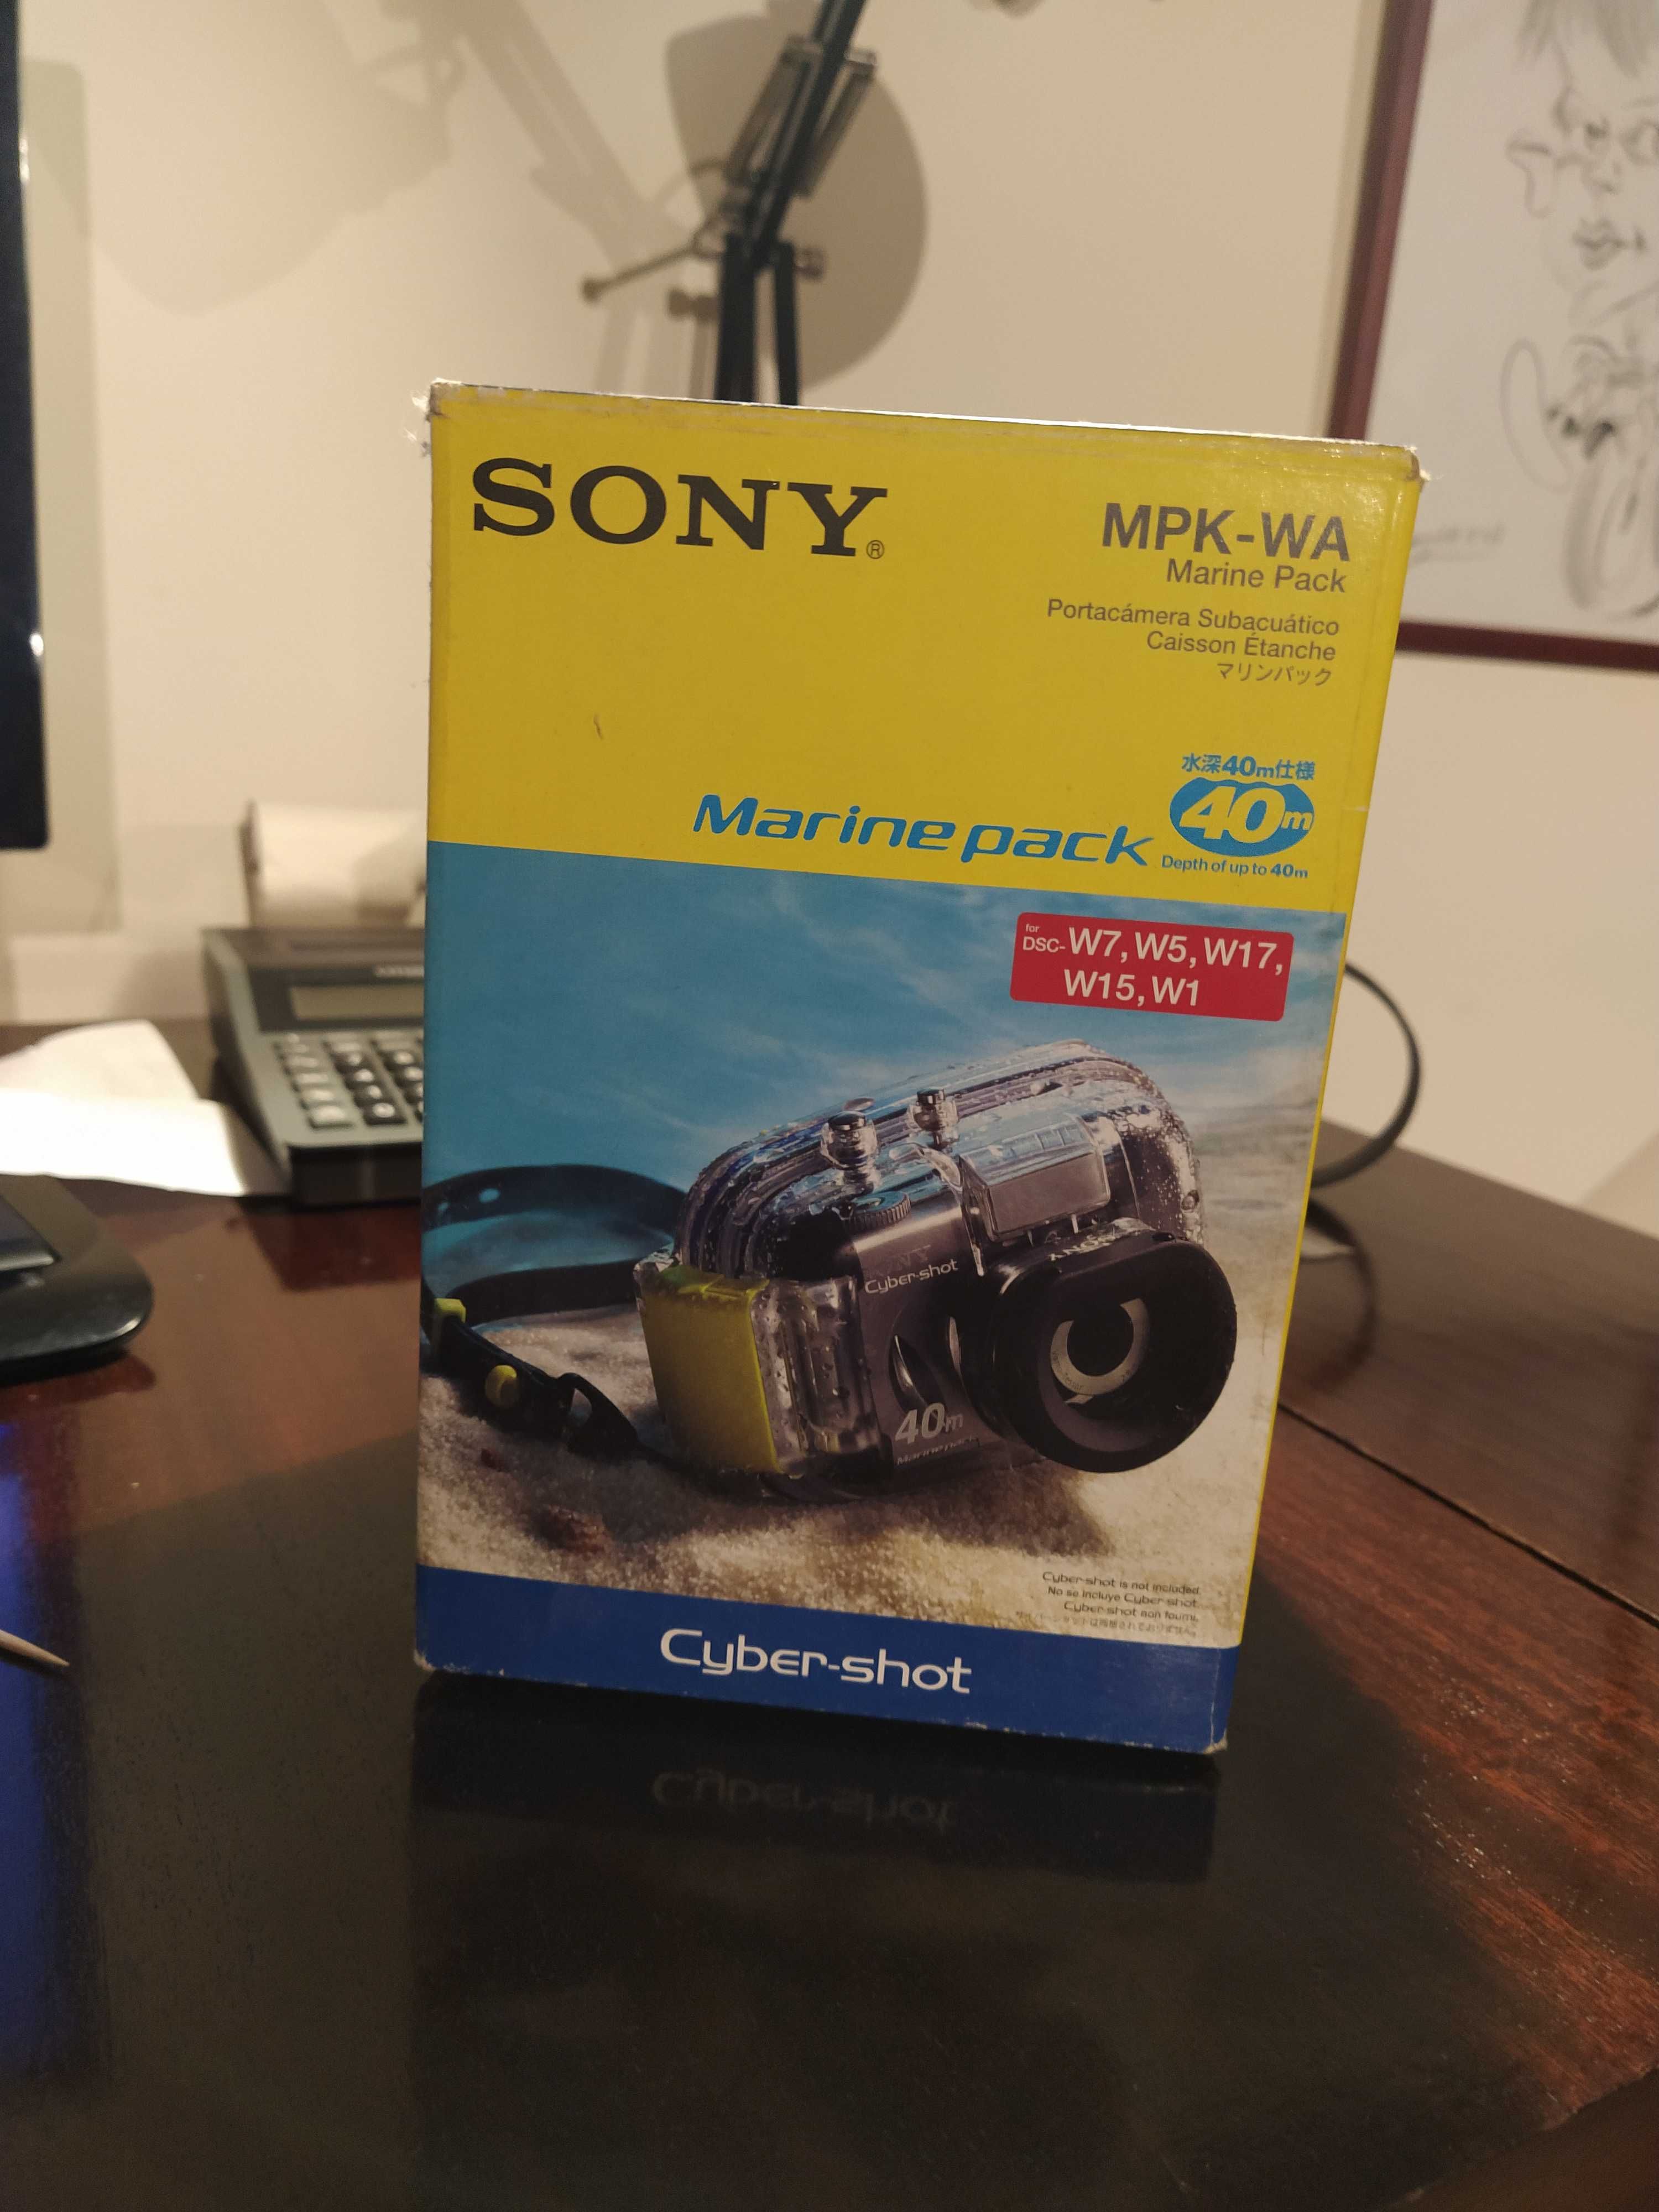 Caixa  estanque para câmara subaquática Sony Ciber-shot